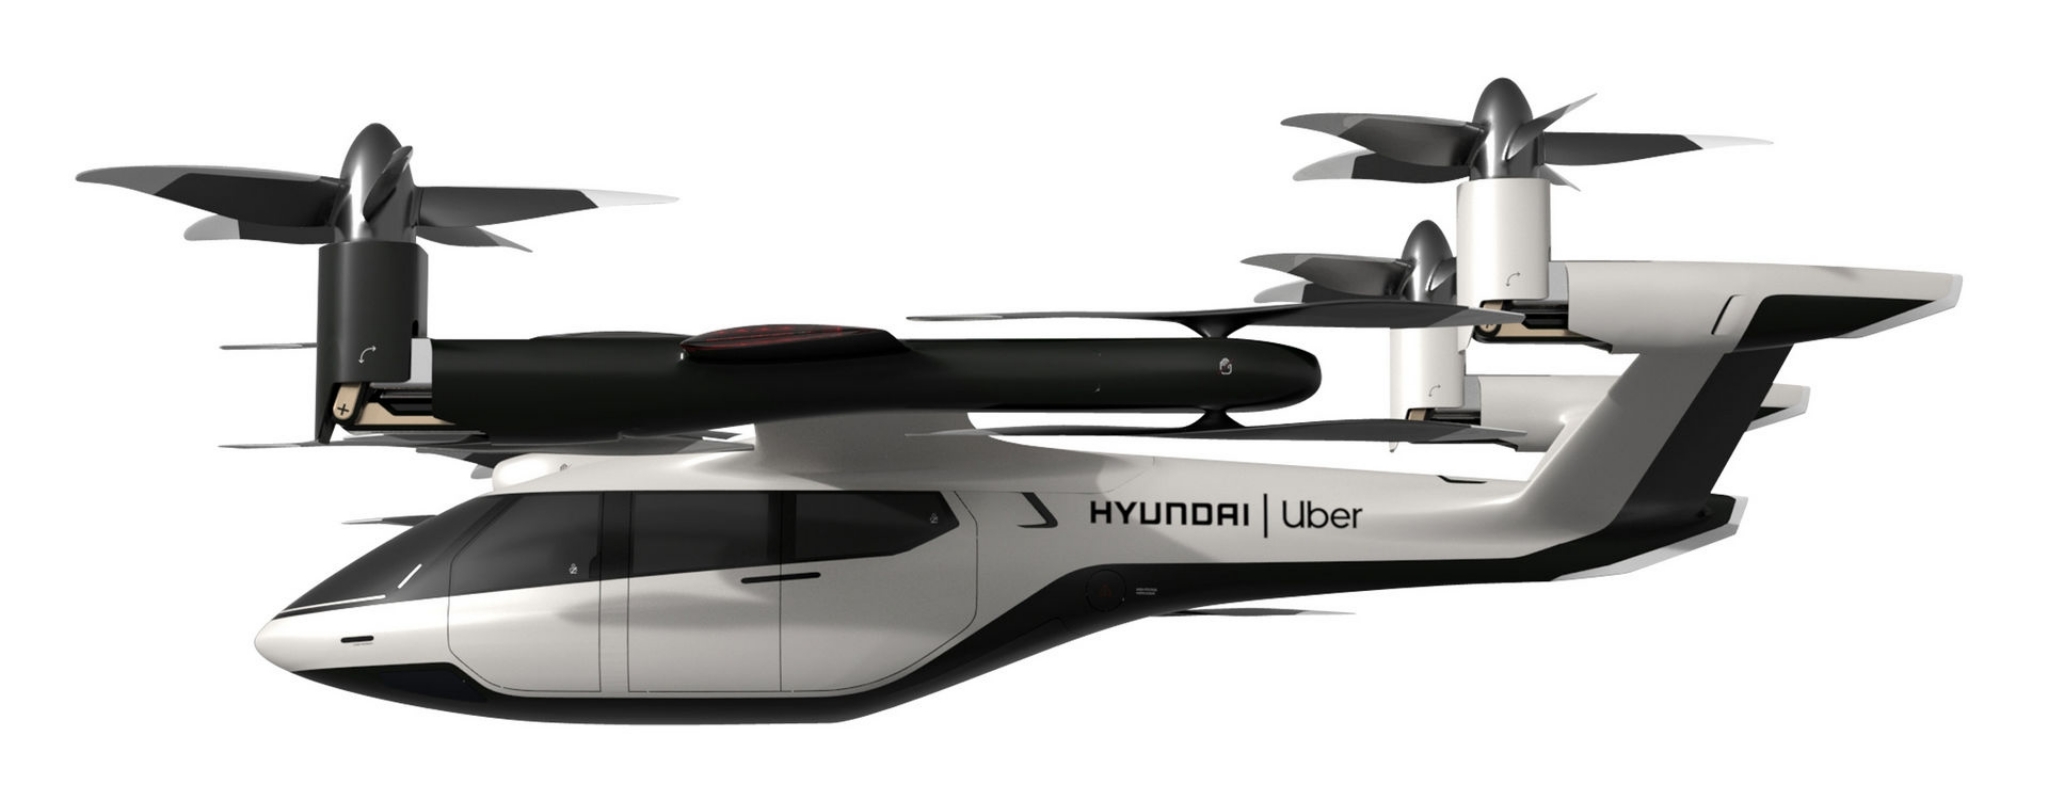 Hyundai-Uber-11.jpg